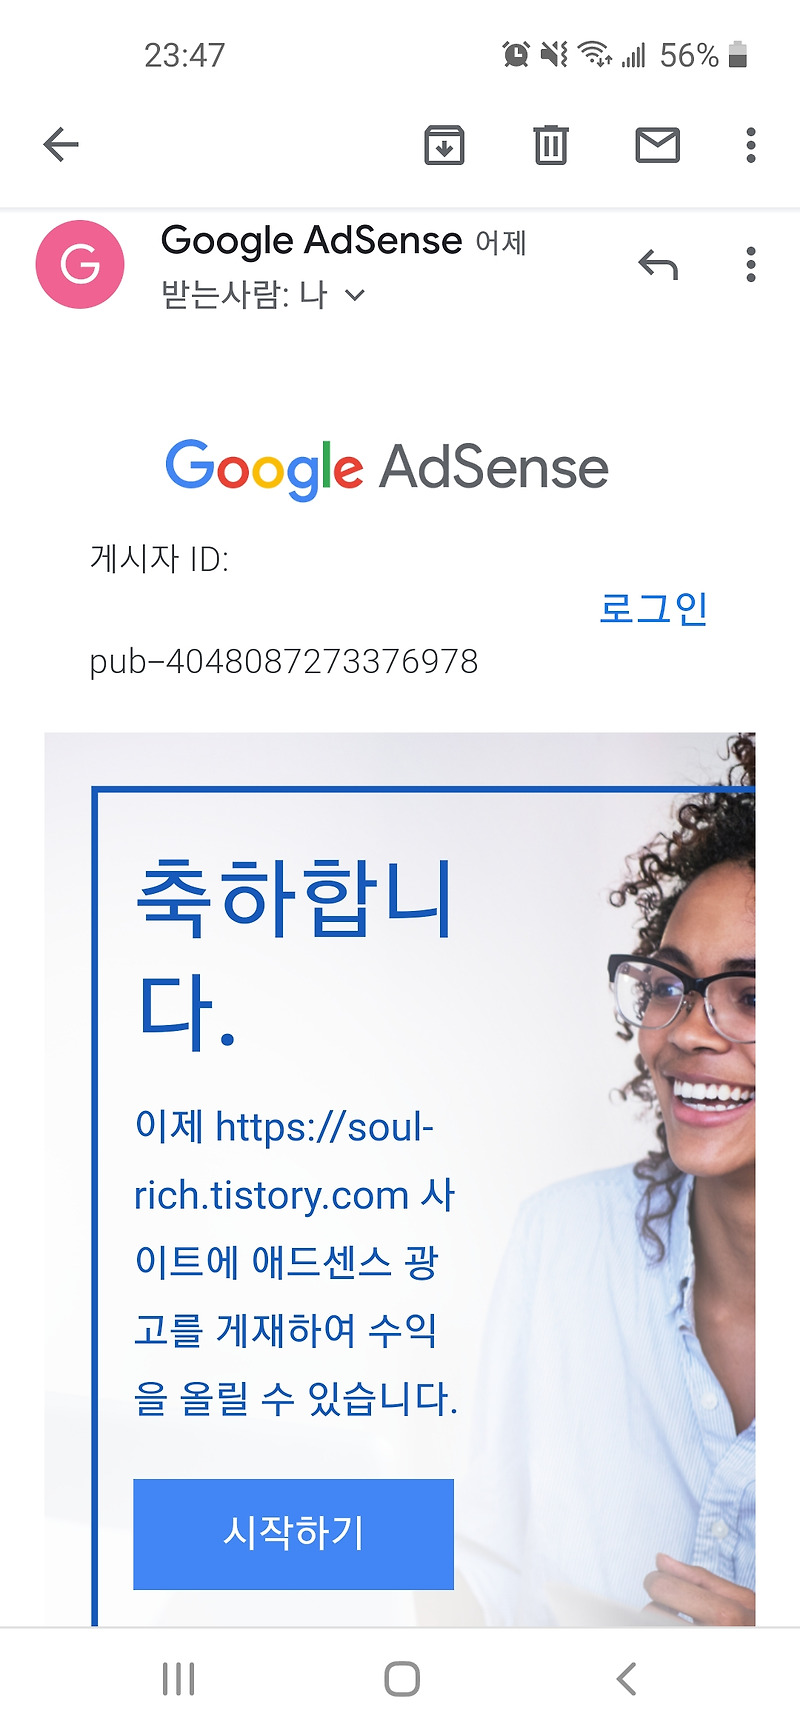 구글 애드센스 삼수 후 합격